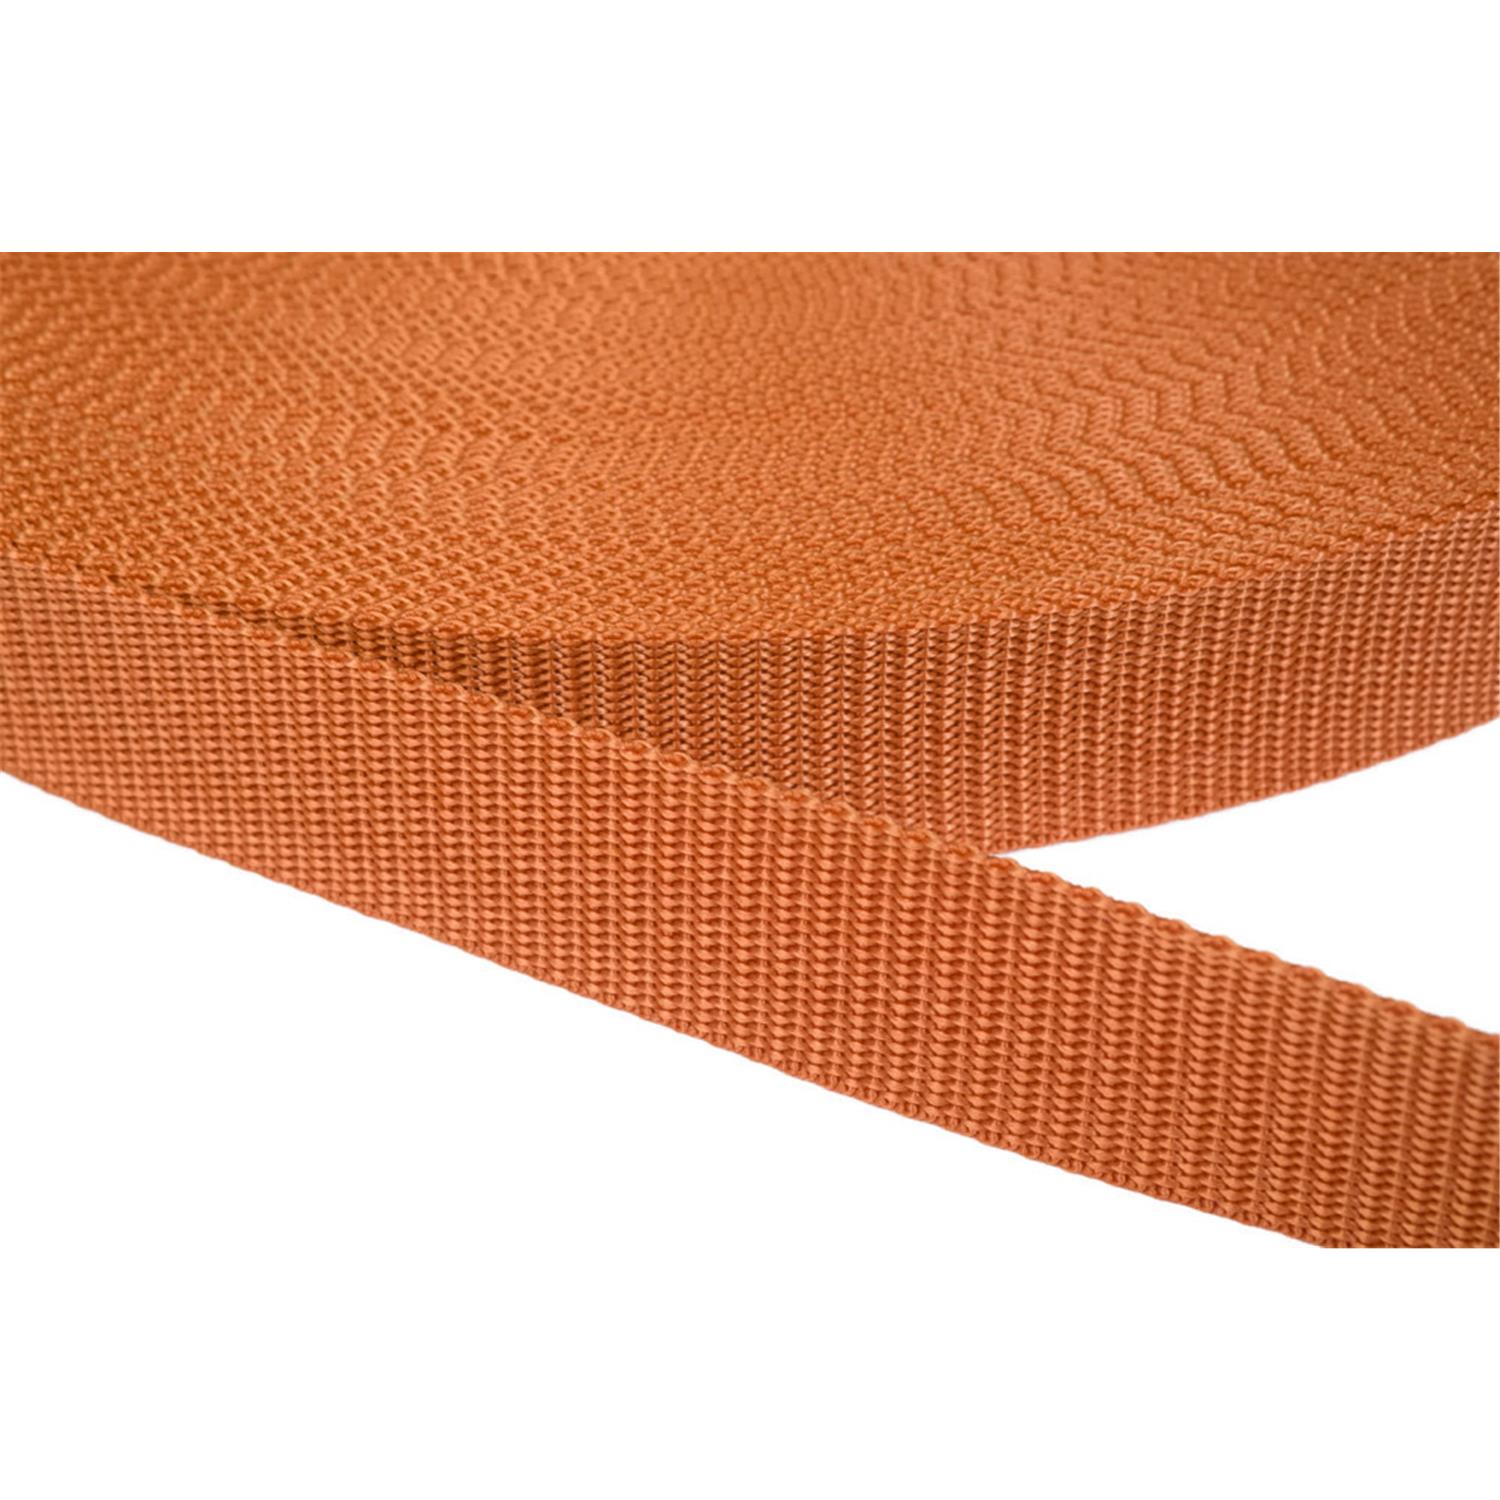 Gurtband 50mm breit aus Polypropylen in 41 Farben 05 - ockerbraun 12 Meter